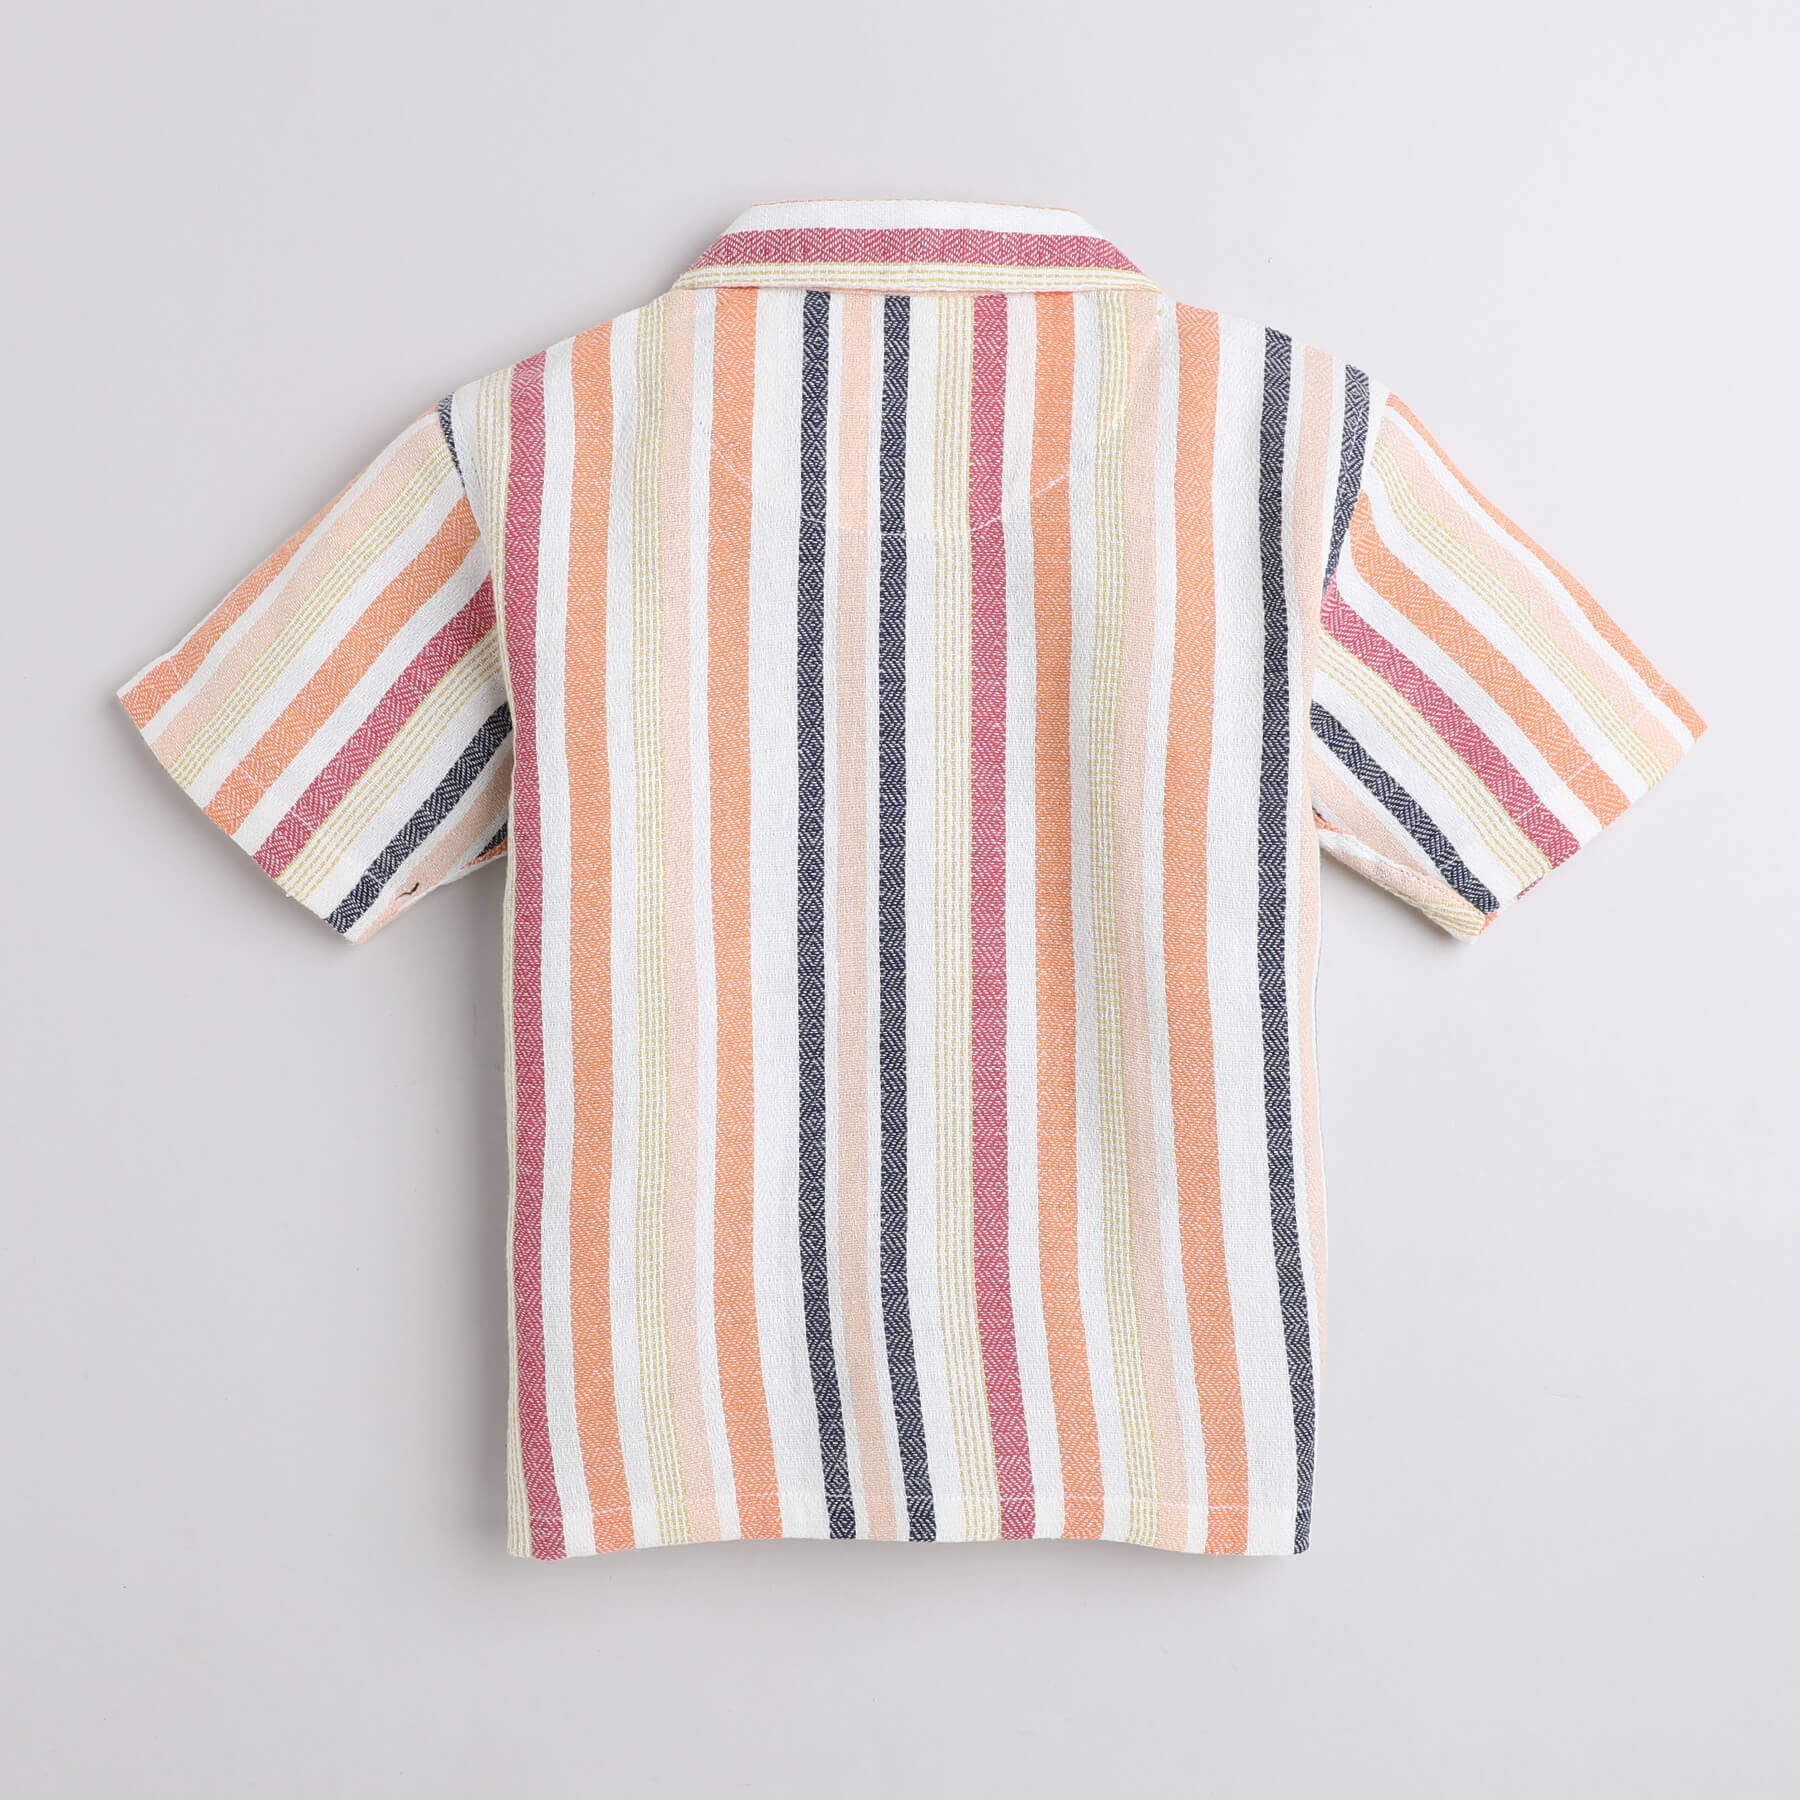 Taffykids 100% cotton multi striped yarndyed Half sleeves oversized Shirt-Multi